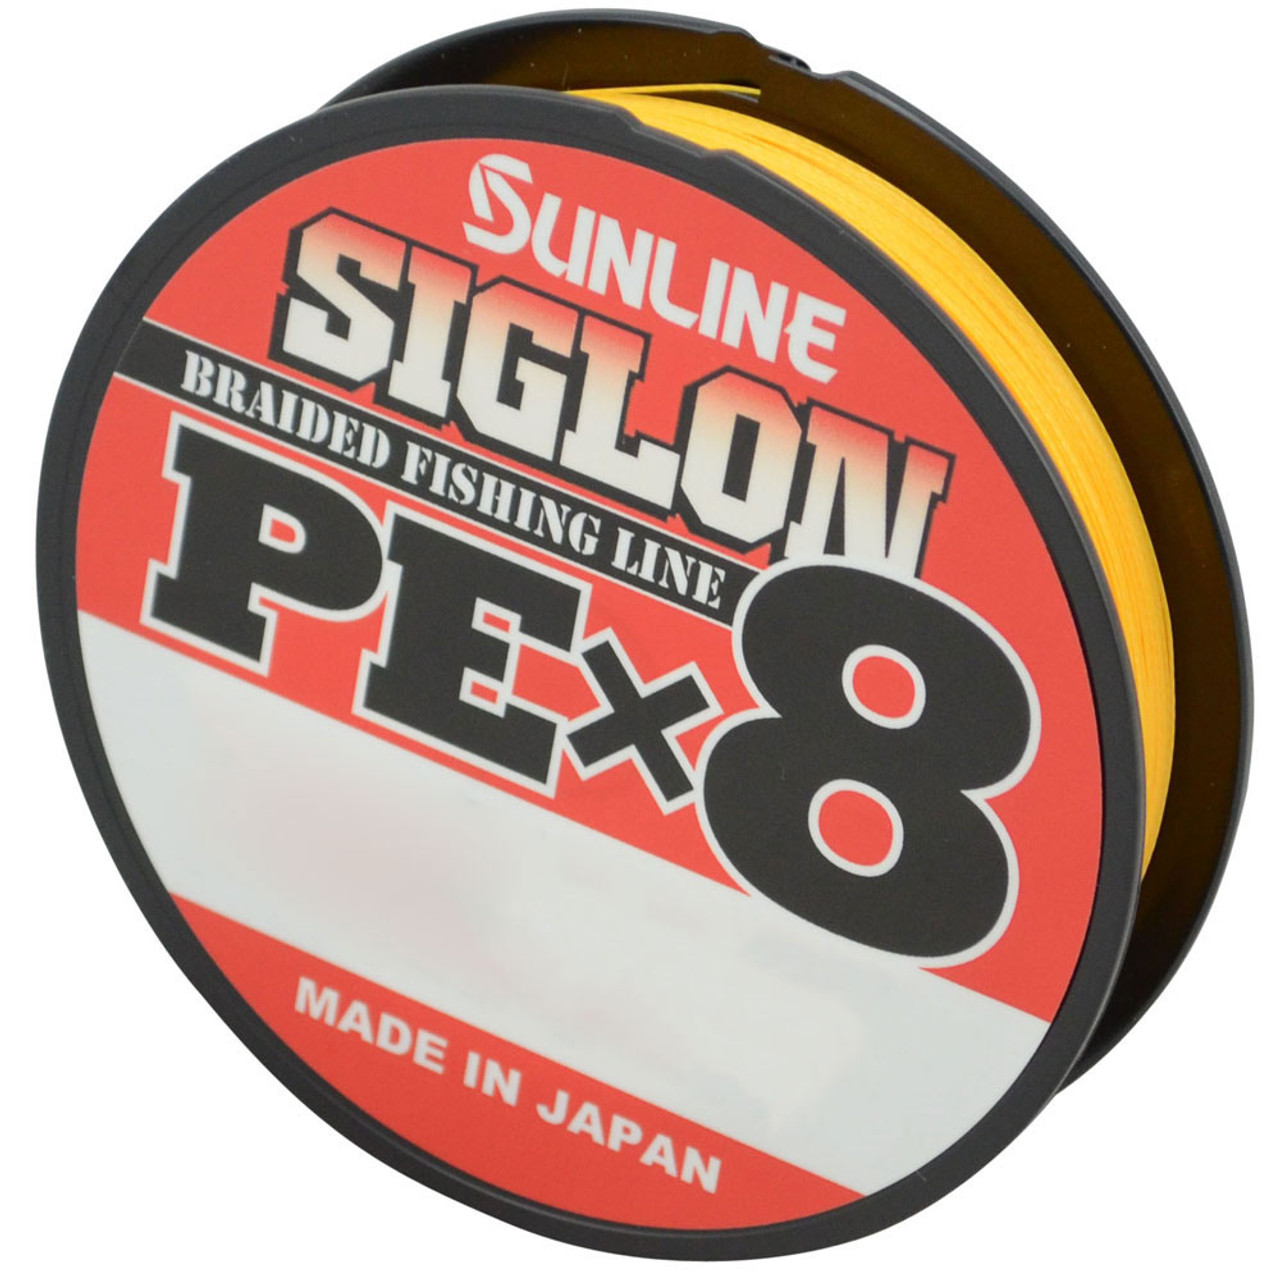 Sunline Siglon PE Braid Line PEx4 or PEx8 For Sale